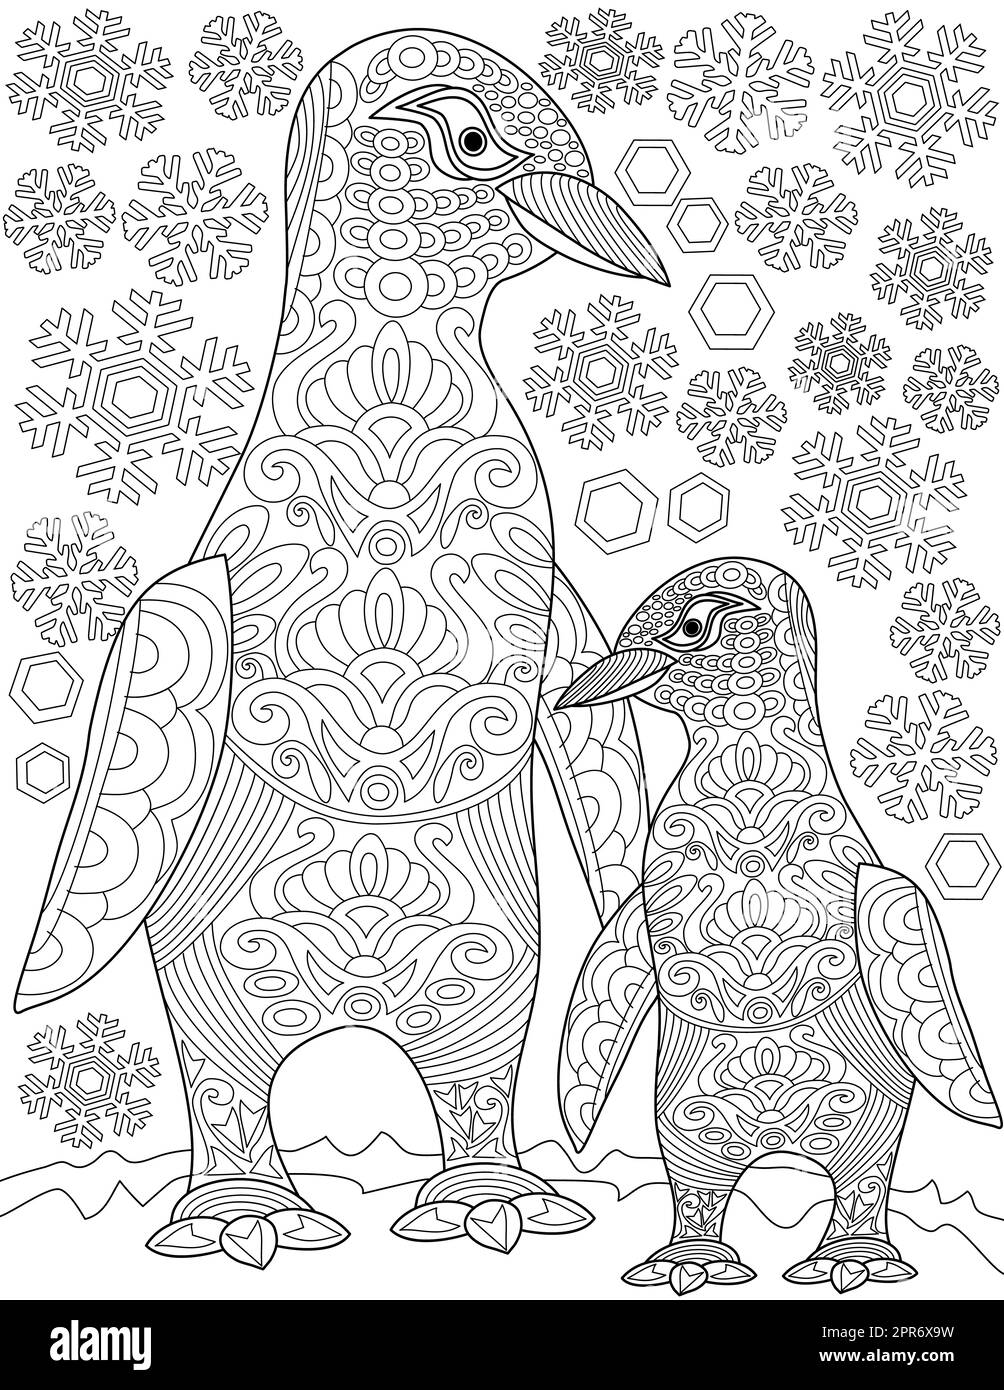 Pagina del libro da colorare con Pinguino che cammina con fiocchi di neve sullo sfondo. Foglio da colorare con due uccelli del mare felici uno accanto all'altro. Foto Stock